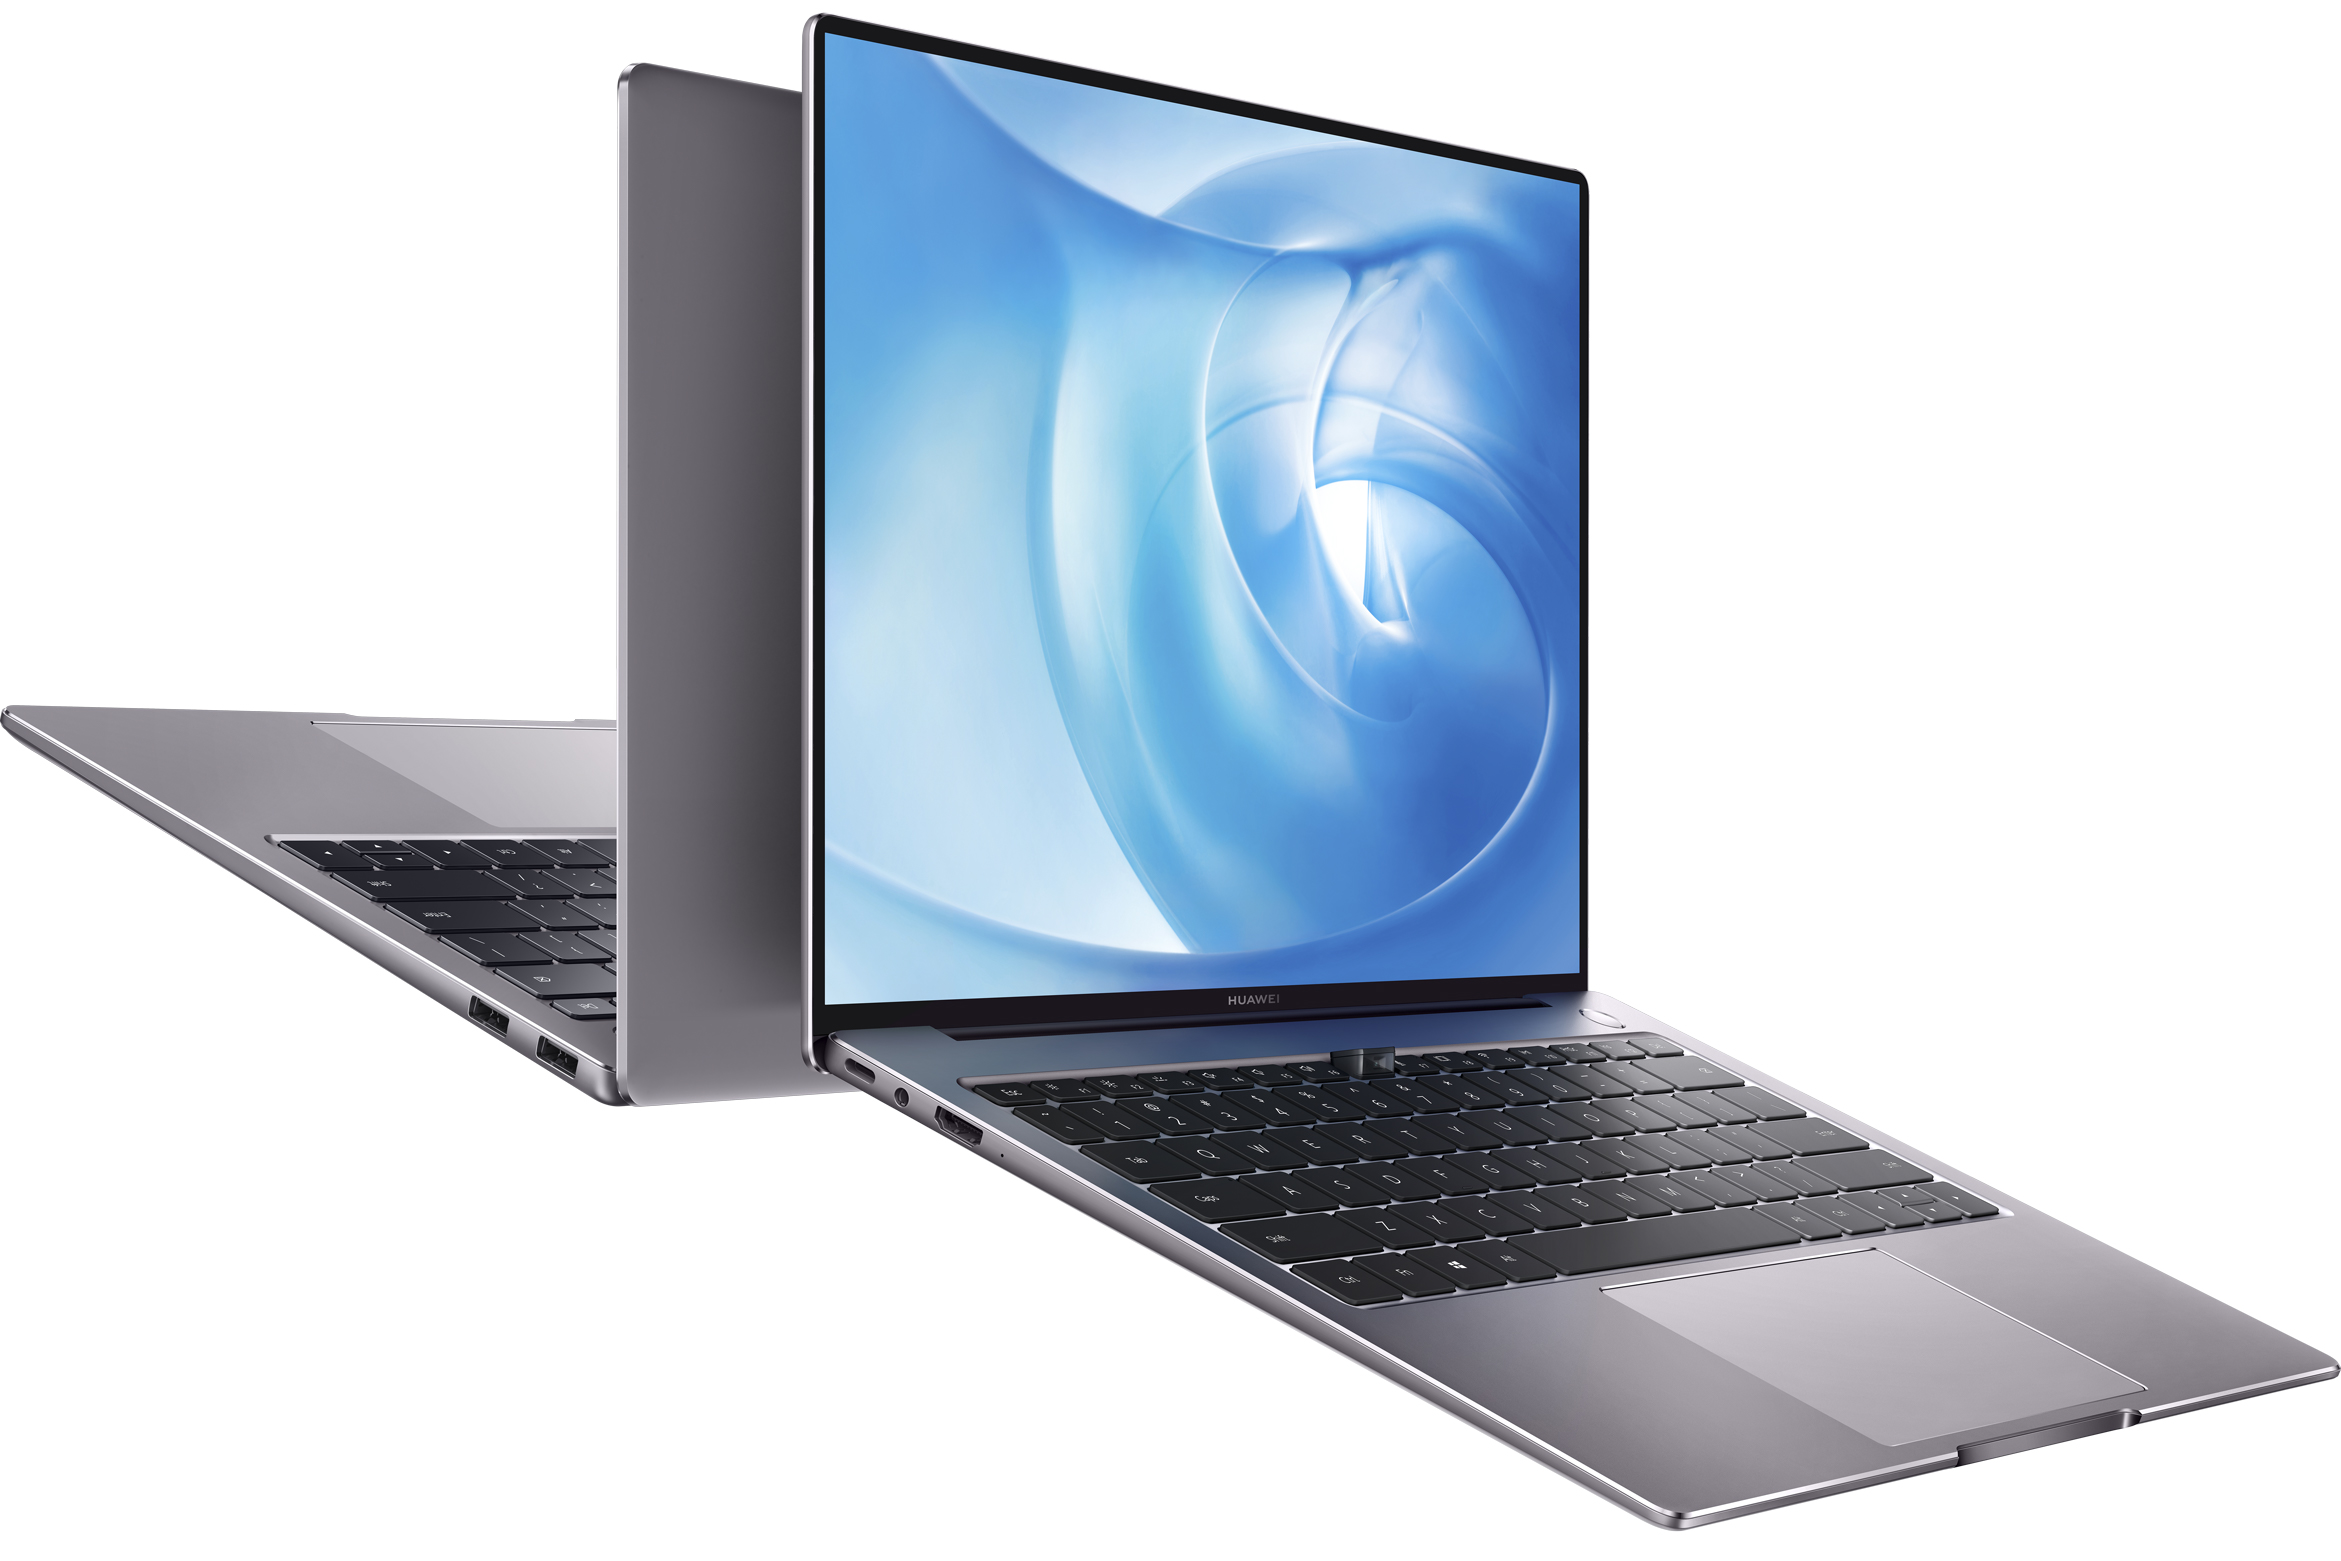 Huawei présente deux nouveaux PC portables, le MateBook X et le MateBook 14